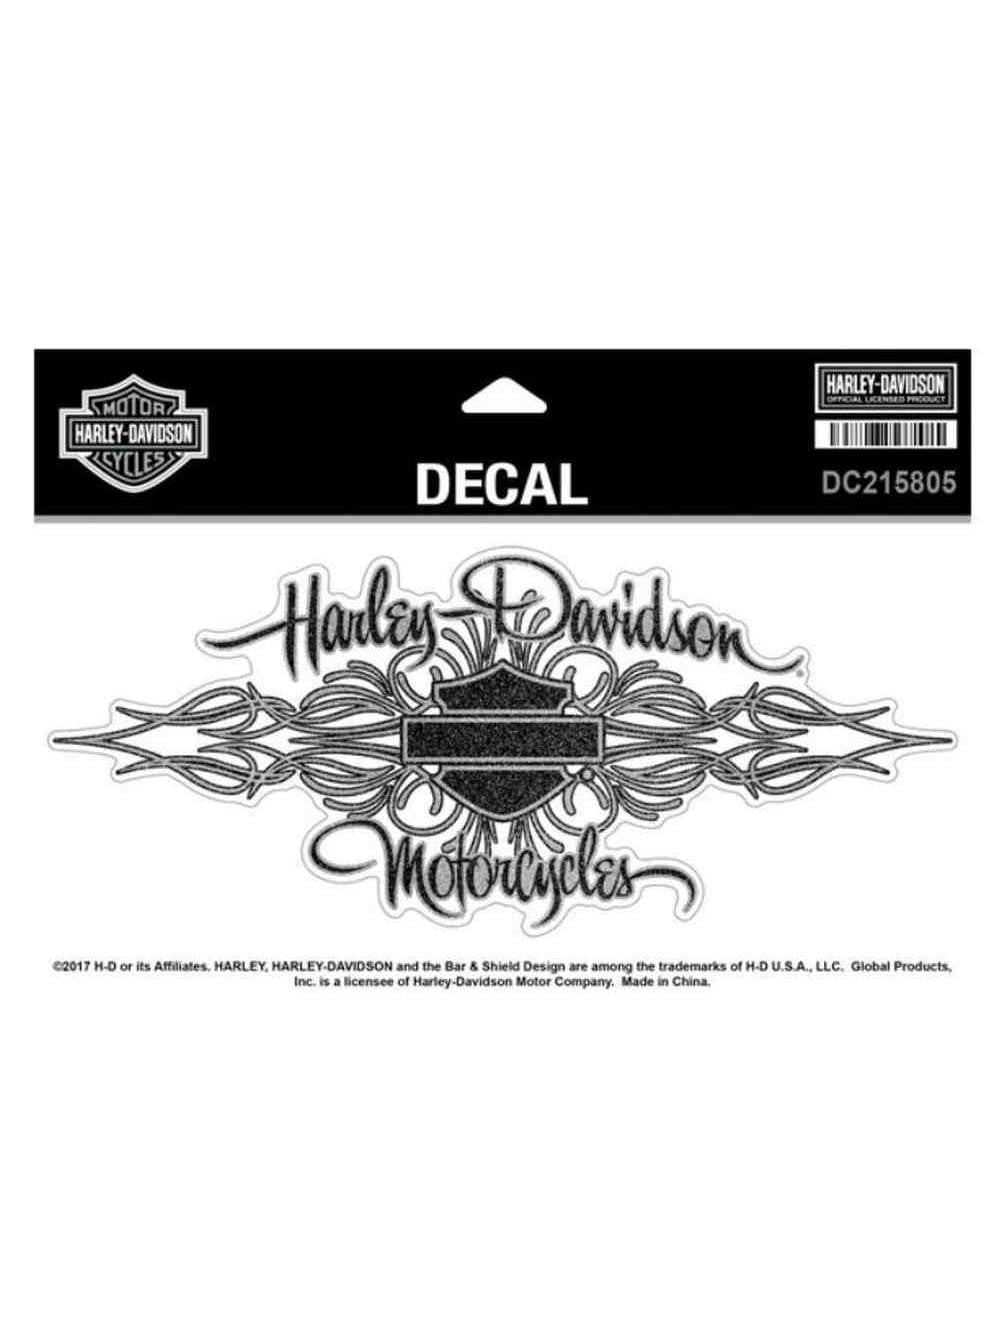 Harley Davidson Signature Glitter Decal Size Xl 8 125 X 3 625 Inches Dc215805 Harley Davidson Walmart Com